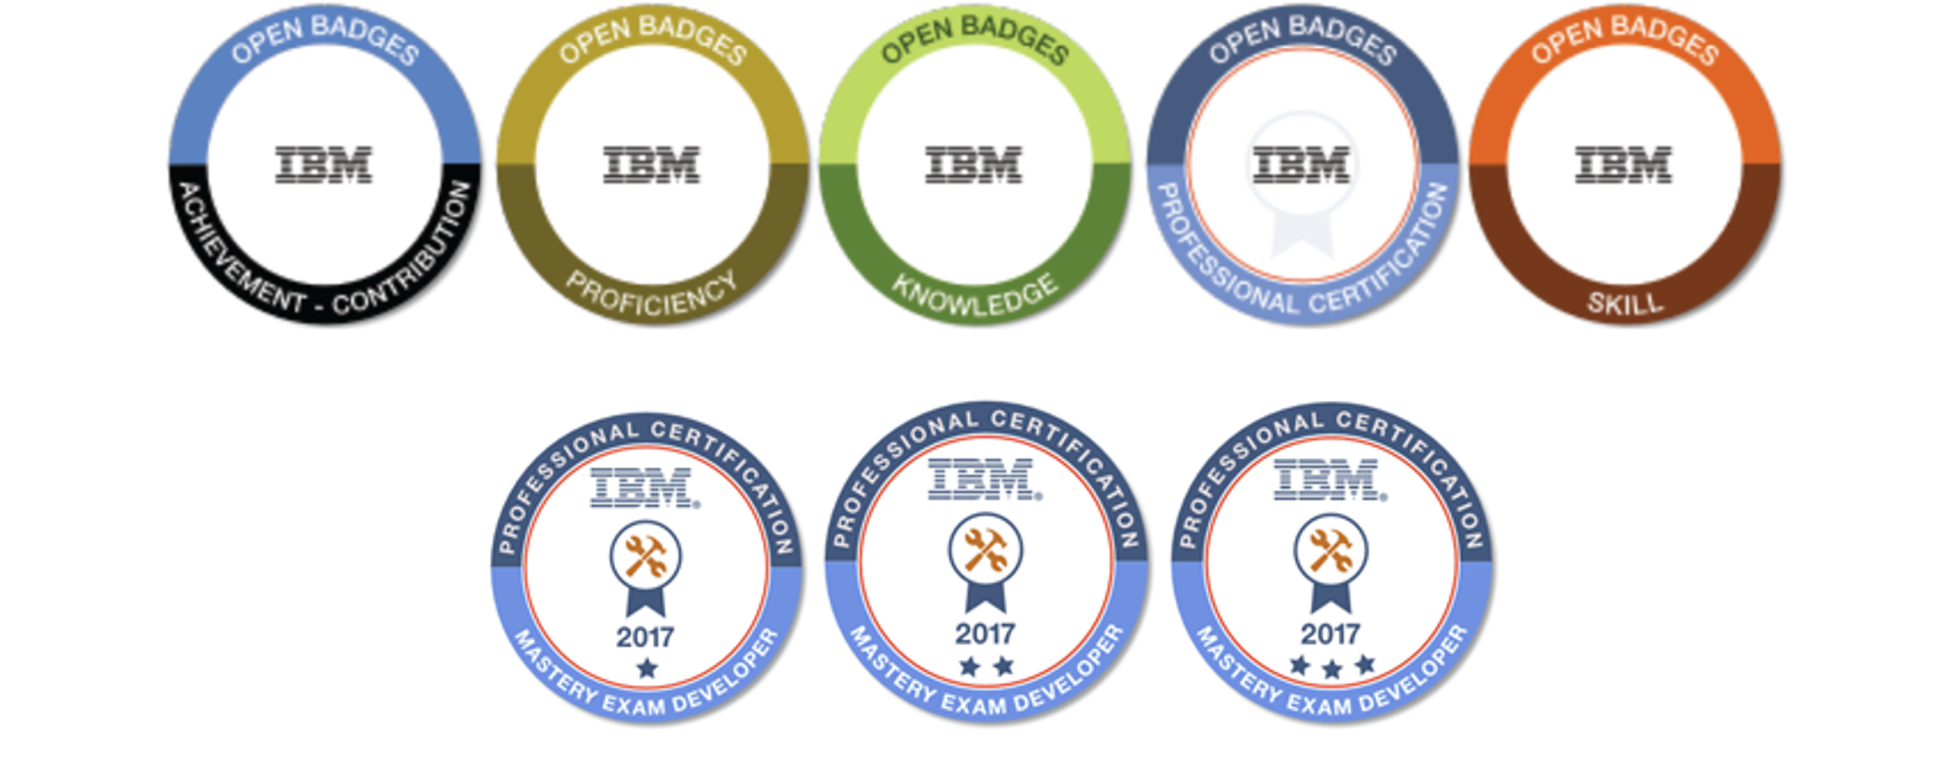 IBM設計的開放徽章，用顏色來表達徽章的類型；用星形符號來表示組內的不同專業等級。